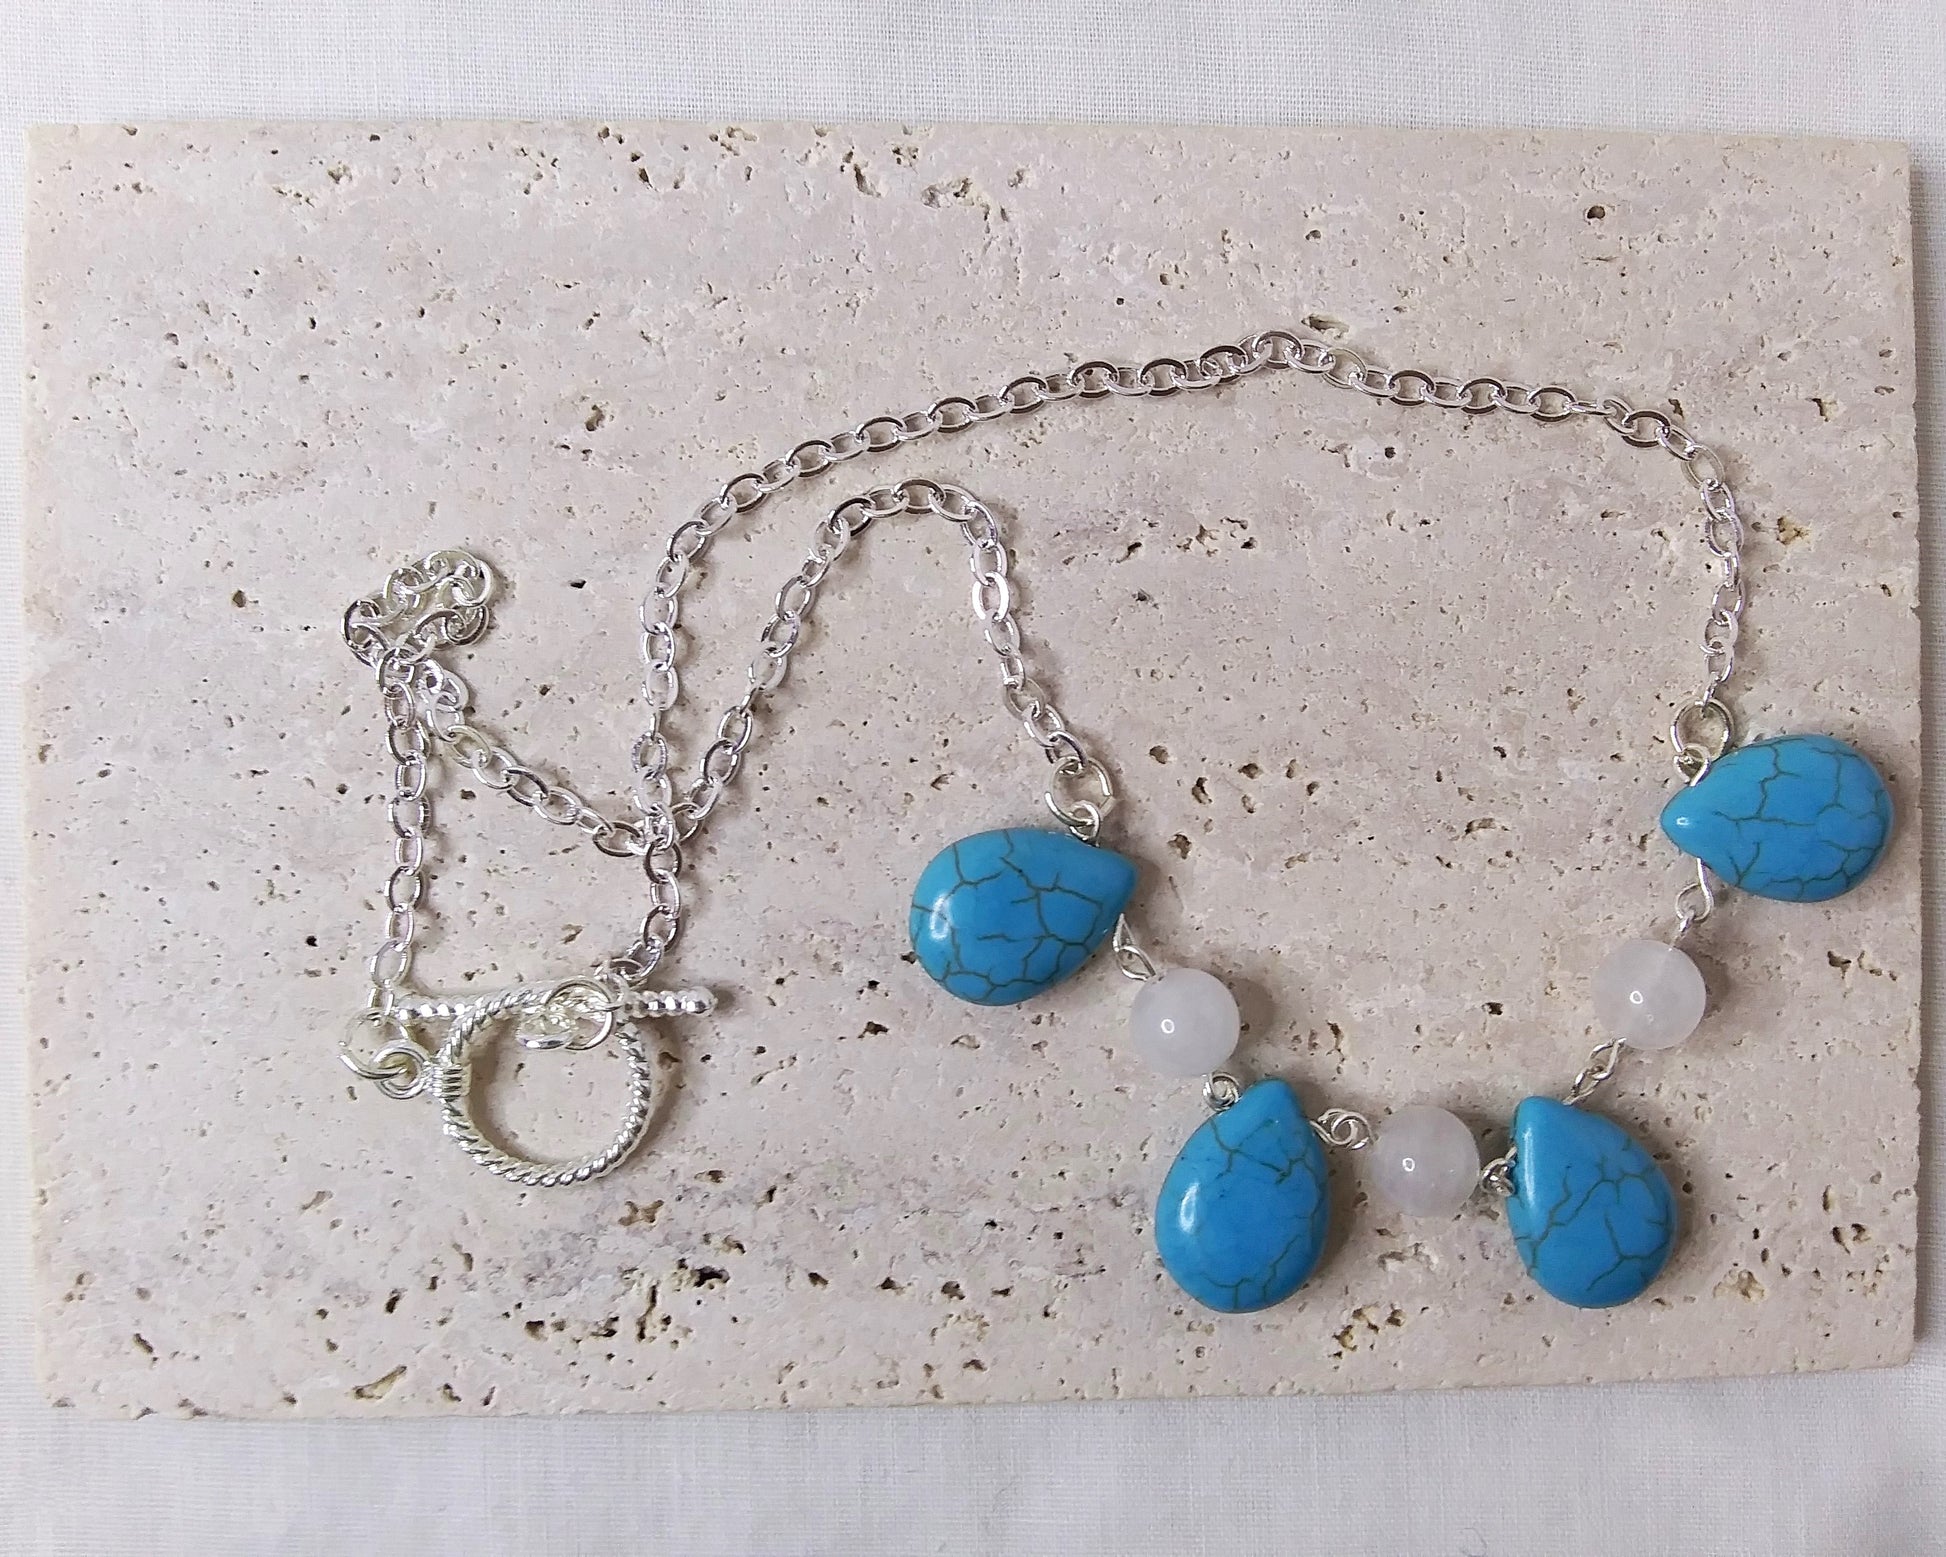 Turquoise Howlite teardrop stone, White Quartzite stone silver necklace